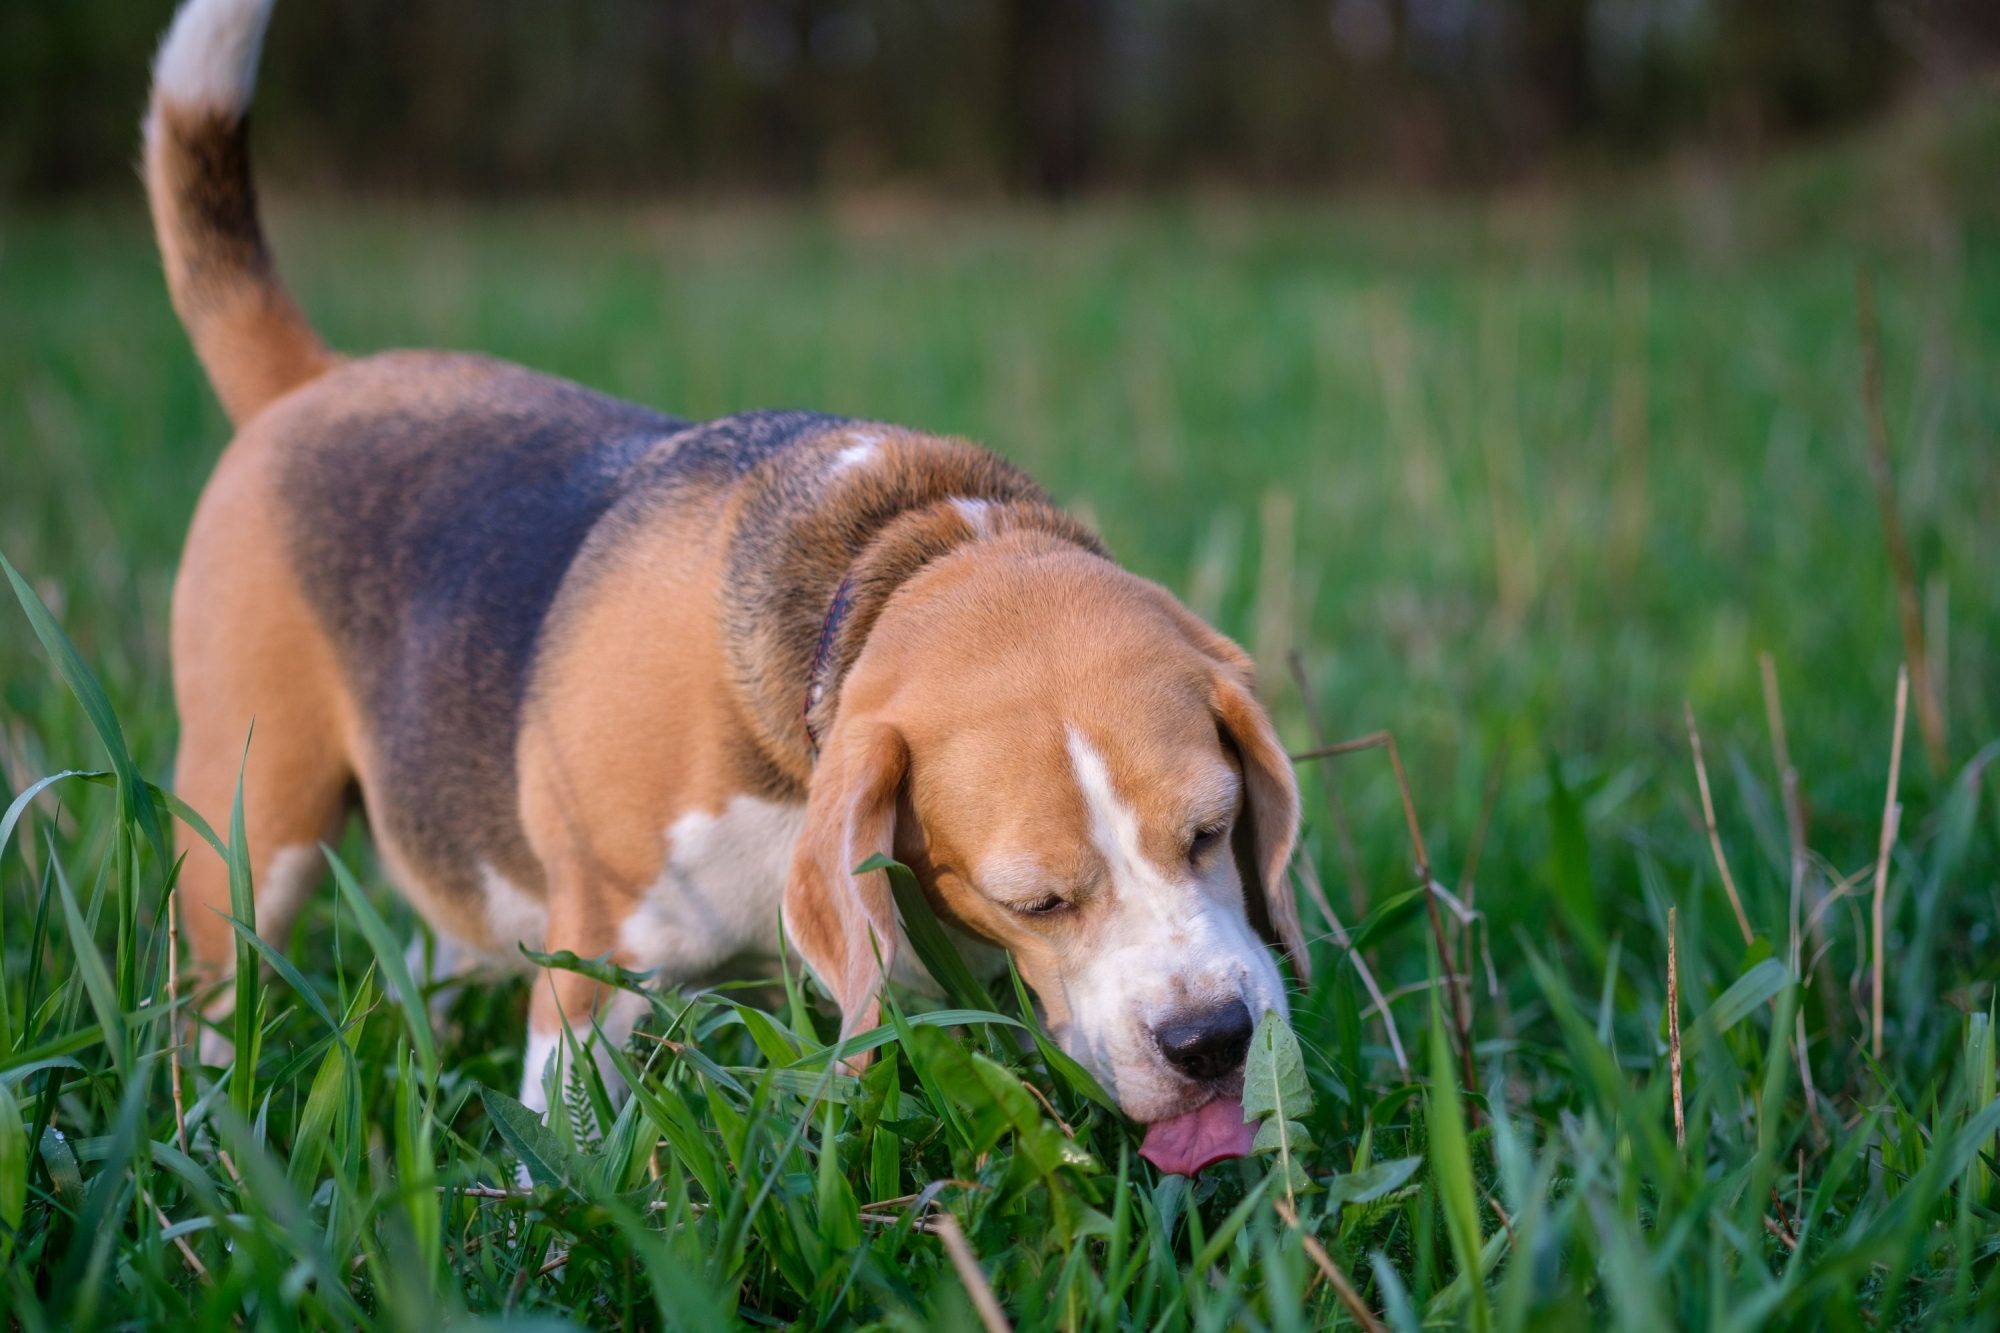 A dog eats grass.